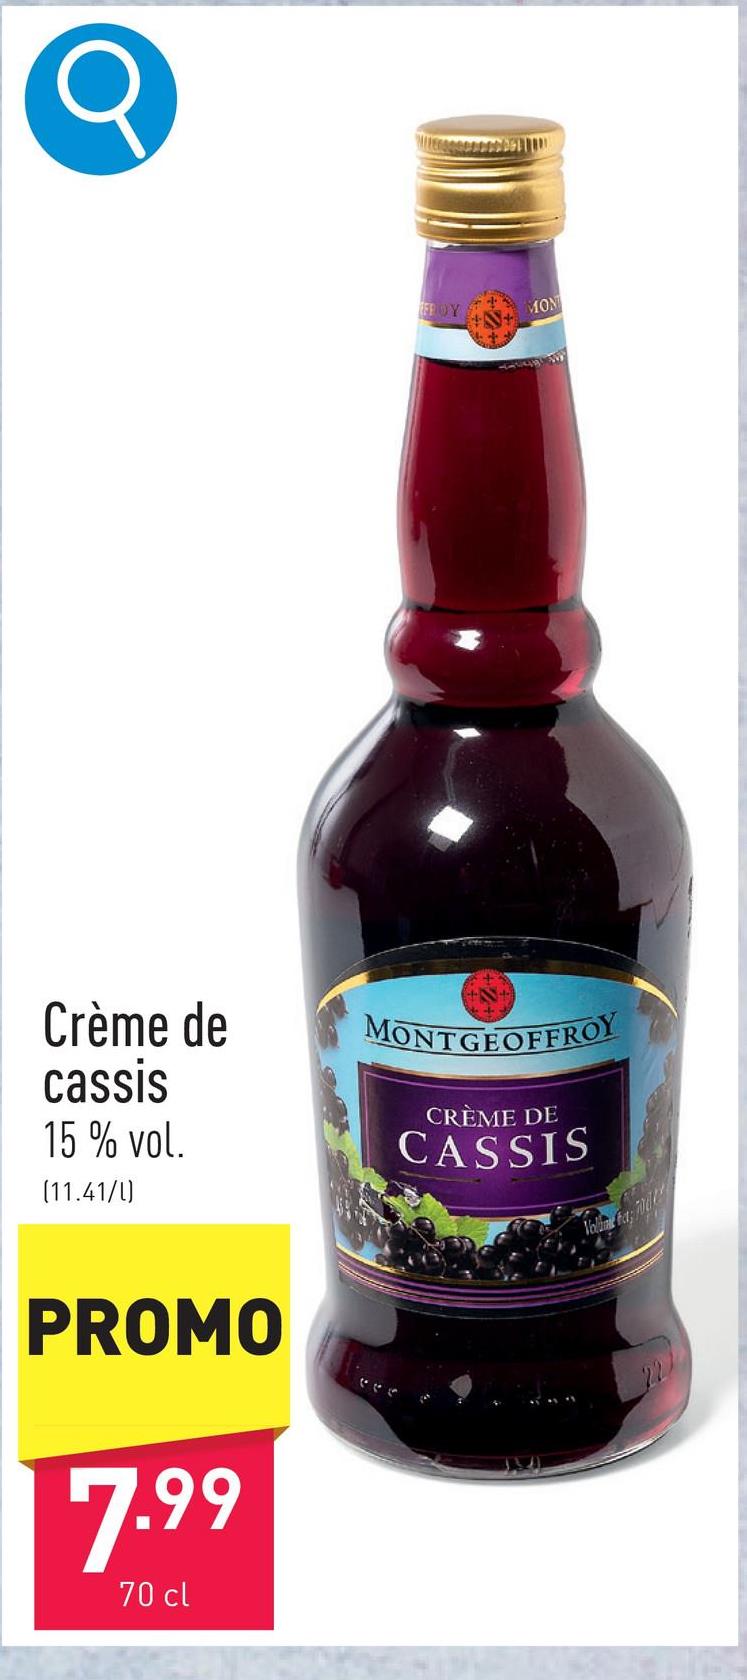 Crème de cassis de ideale basis voor kir en andere cocktails, 15 % vol.